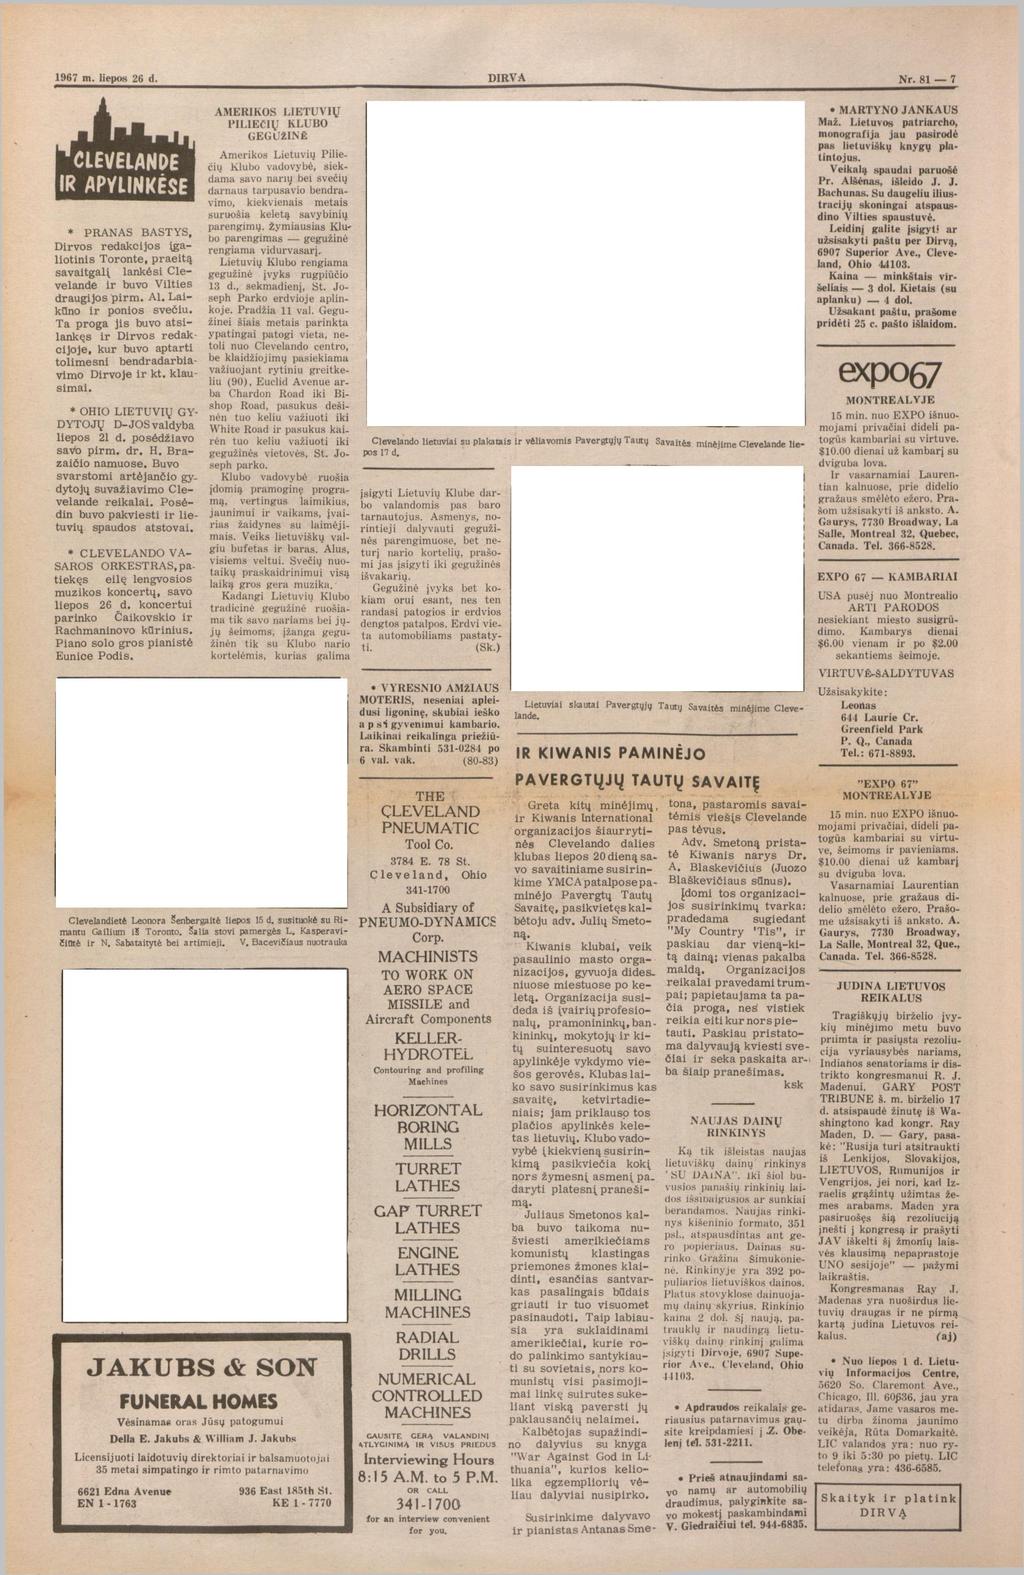 1967 m. liepos 26 d. Nr. 81 7 J... AMERIKOS LIETUVIŲ MARTYNO JANKAUS PILIEČIŲ KLUBO Maž. Lietuvos patriarcho, GEGUŽINĖ monografija jau pasodė pas lietuviškų knygų platintojus.